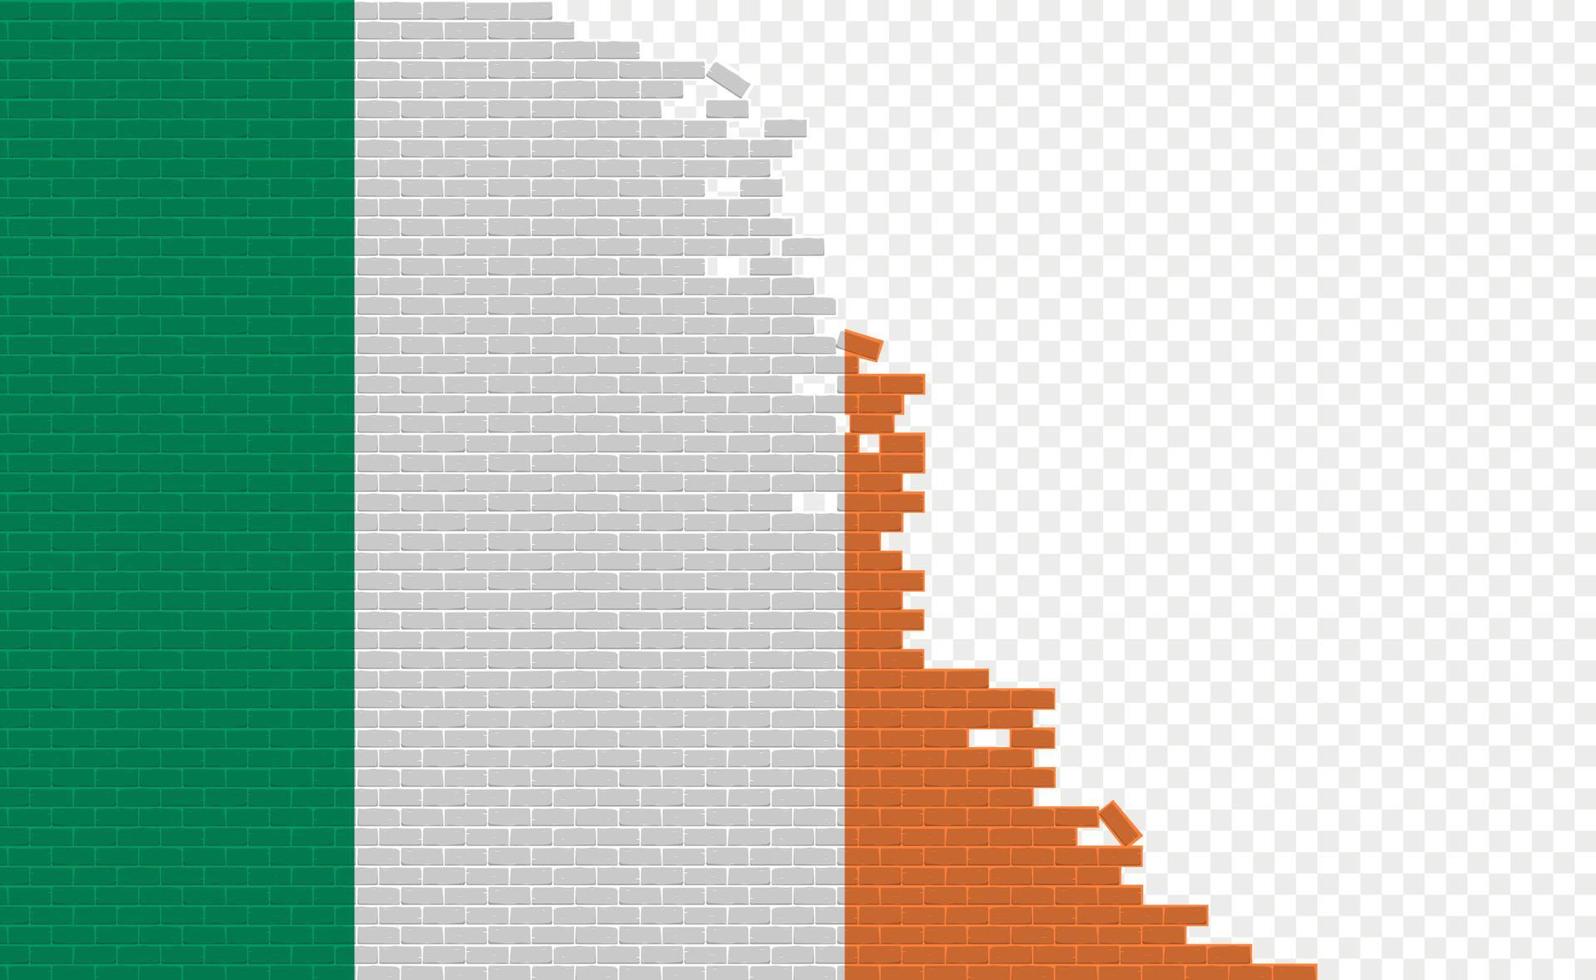 Ierland vlag Aan gebroken steen muur. leeg vlag veld- van een ander land. land vergelijking. gemakkelijk bewerken en vector in groepen.